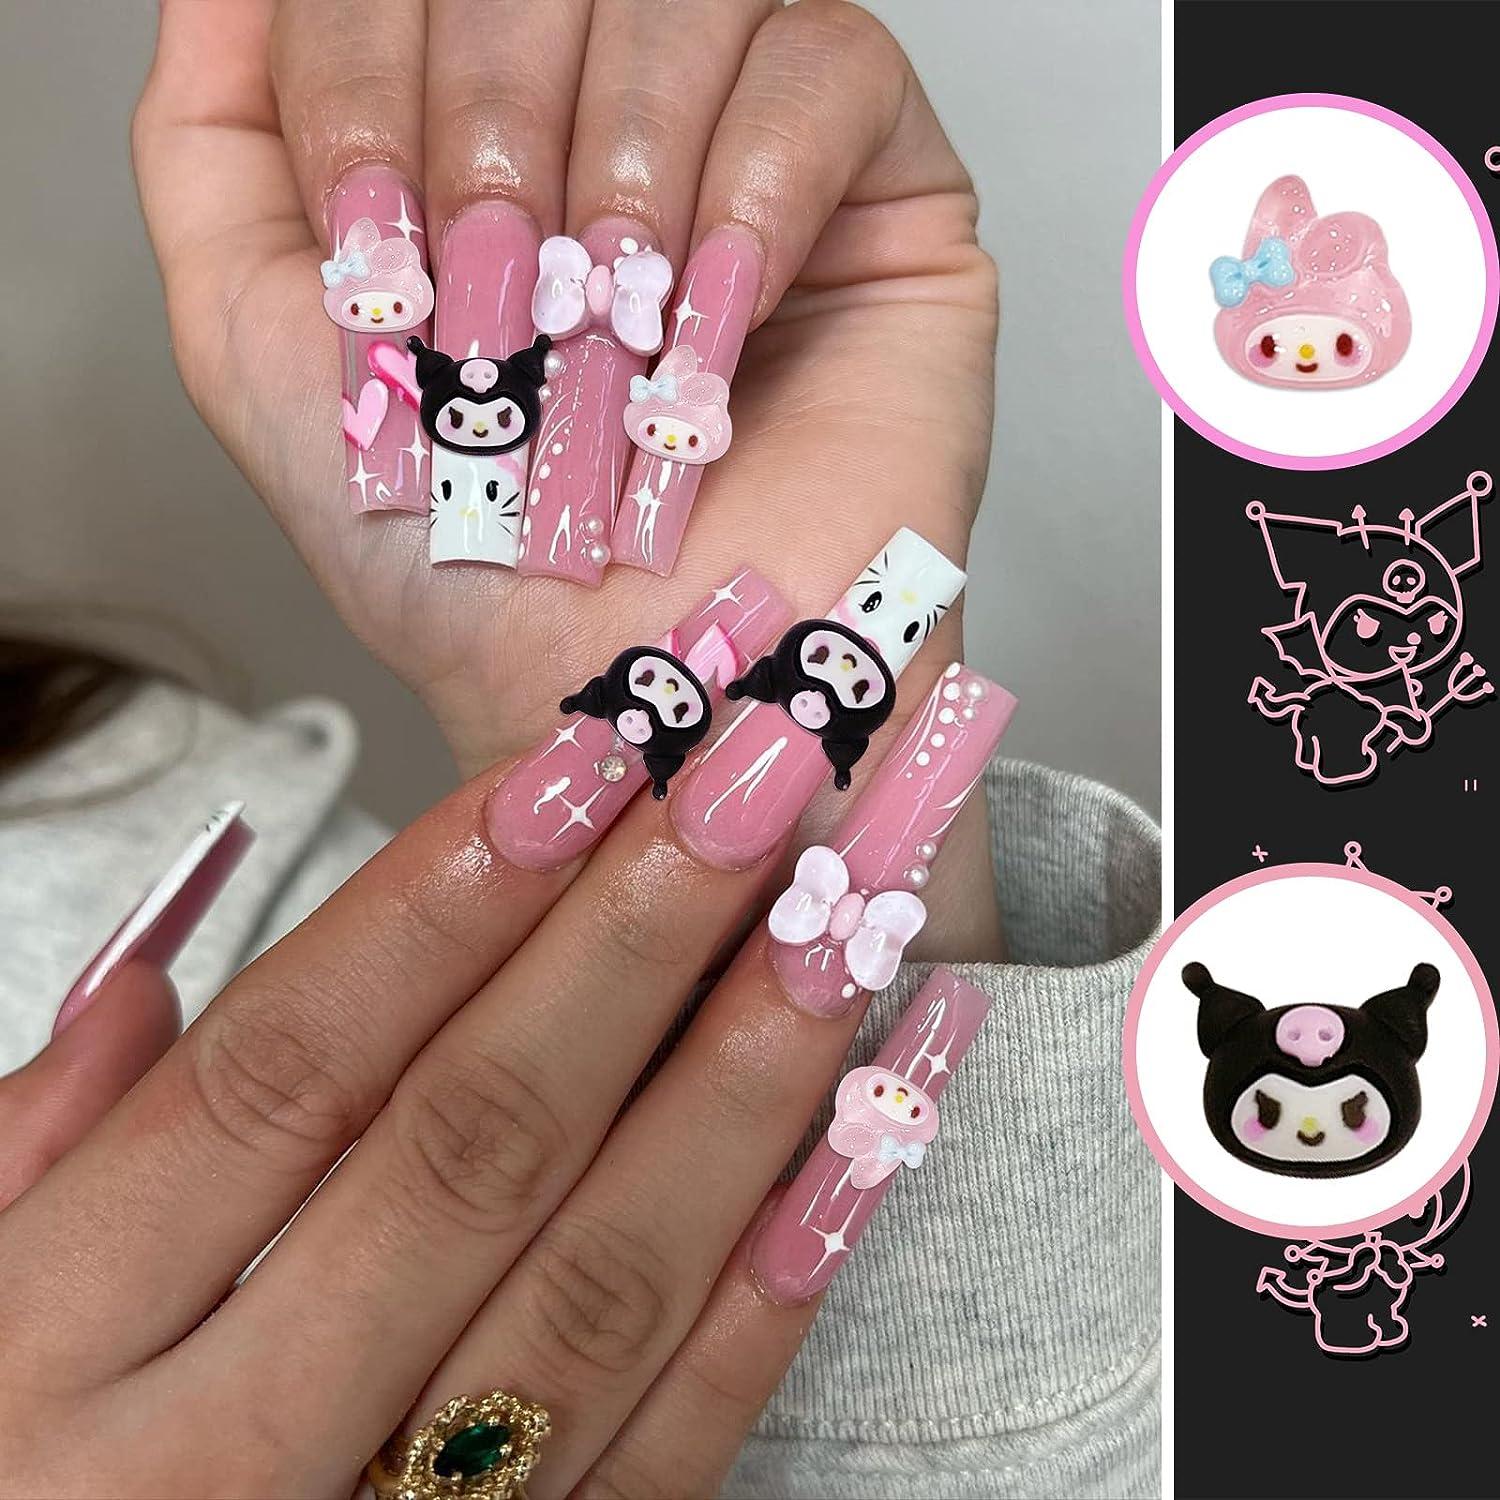 Cute Kawaii Hello Kitty Nail Charms x 4